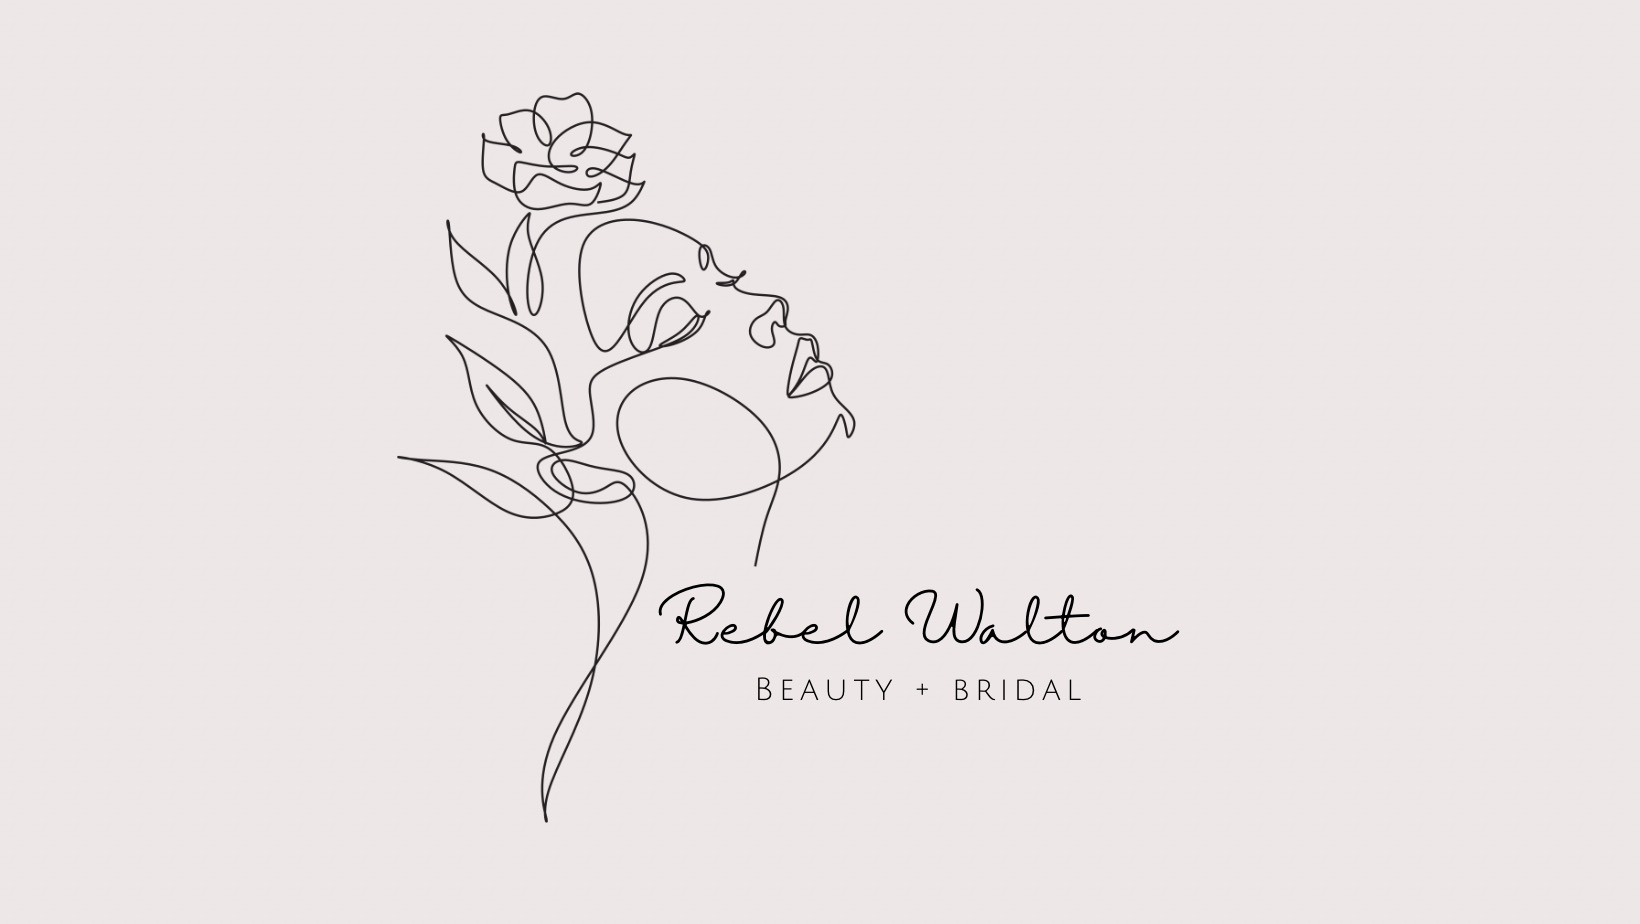 Rebel Walton Beauty + Bridal